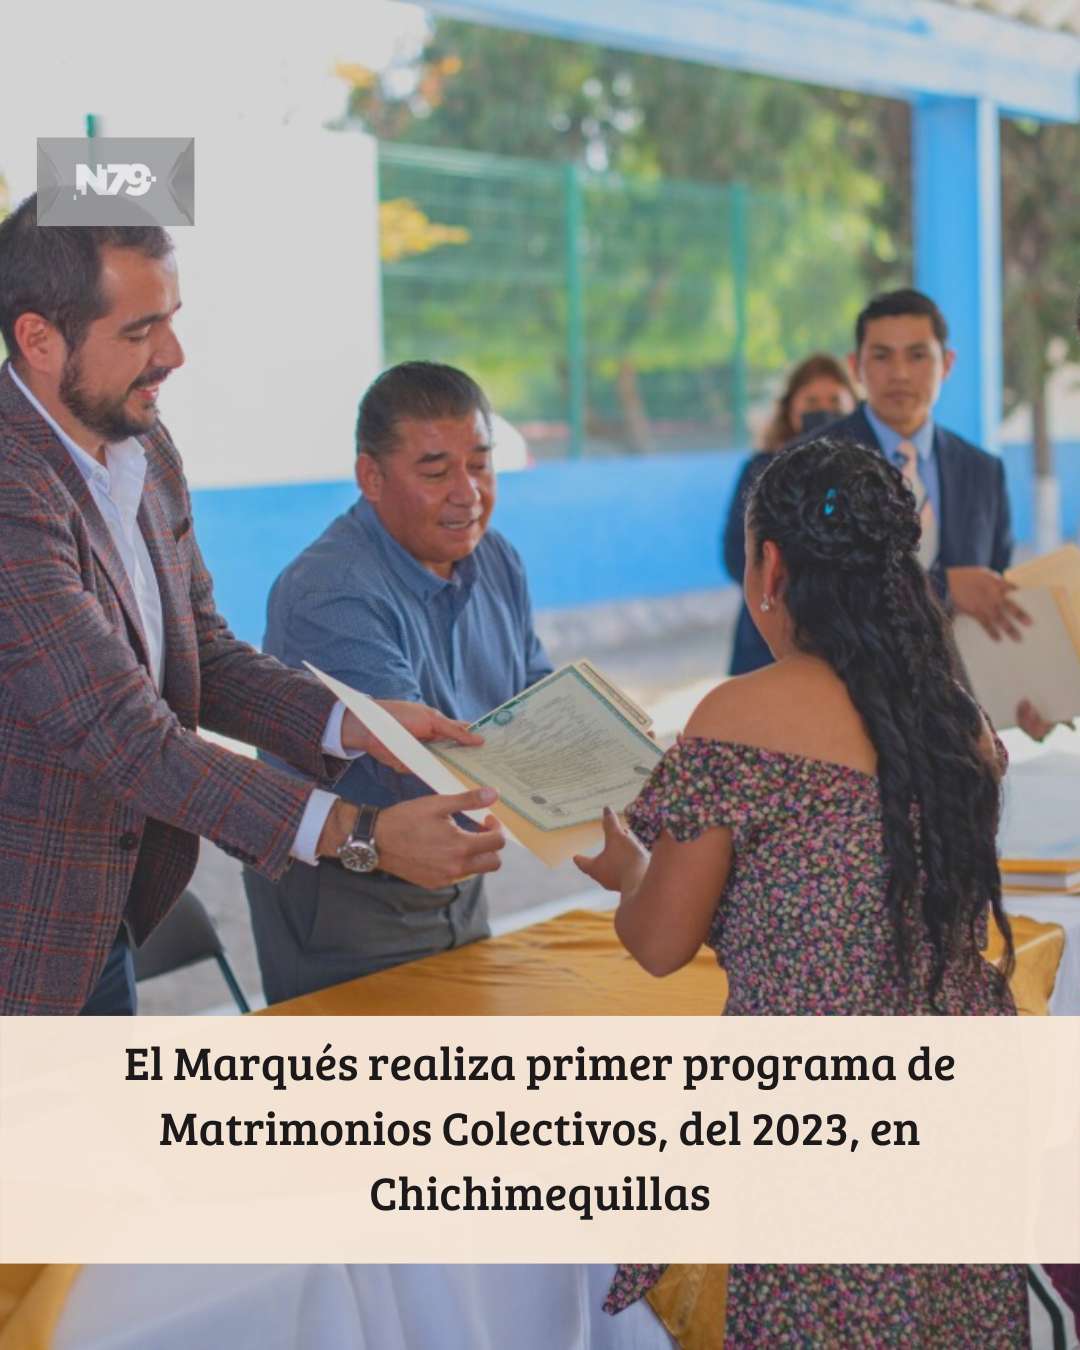 El Marqués realiza primer programa de Matrimonios Colectivos, del 2023, en Chichimequillas